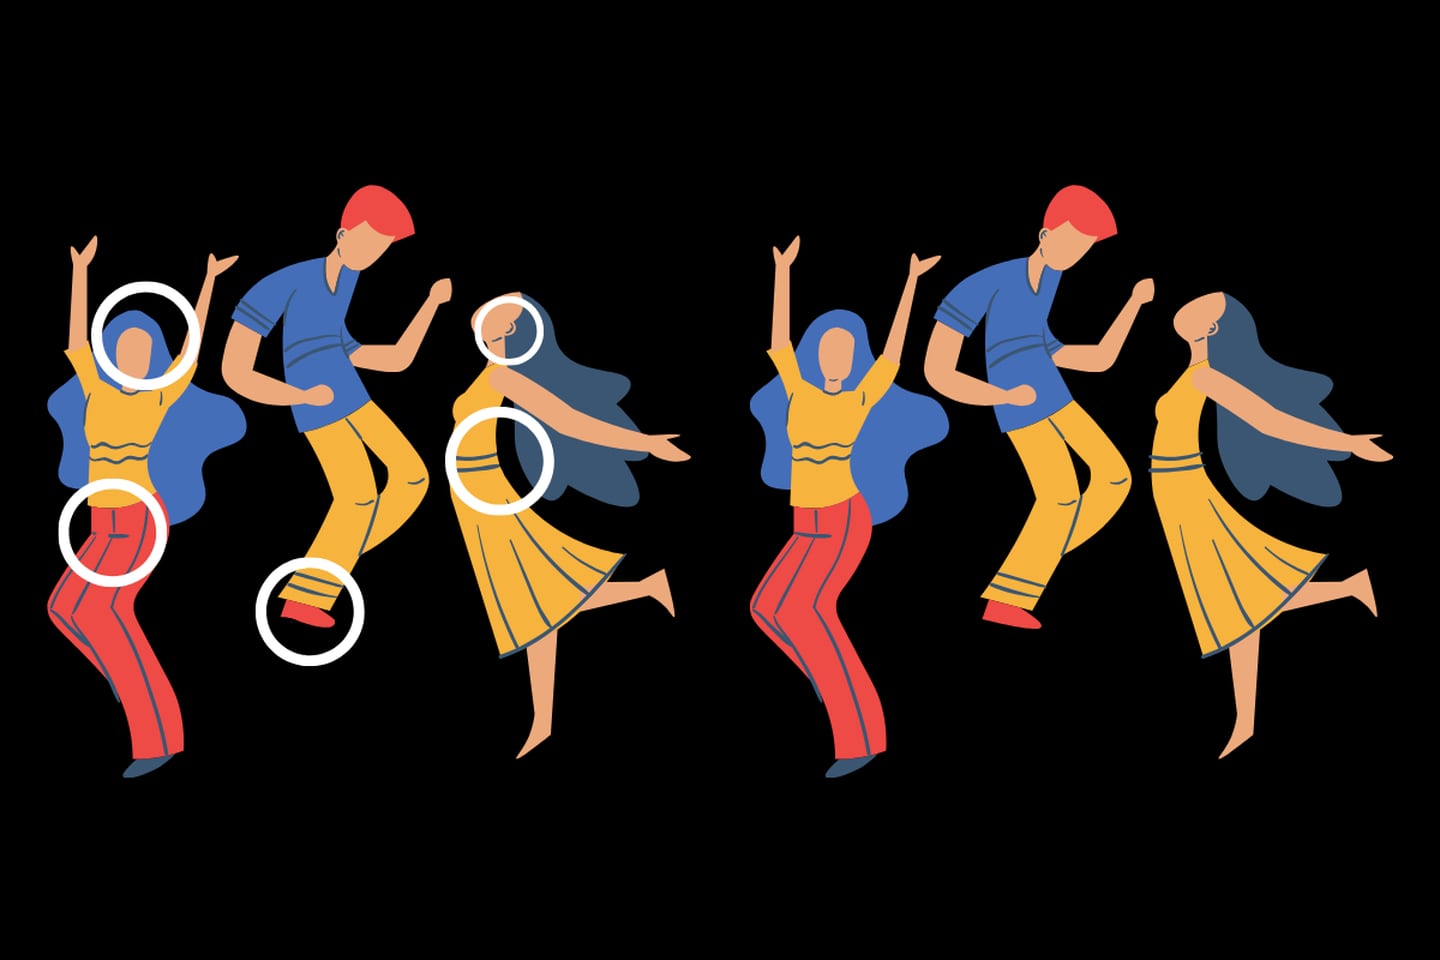 En este test visual hay dos grupos de baile que parecen iguales, pero tienen 5 diferencias.